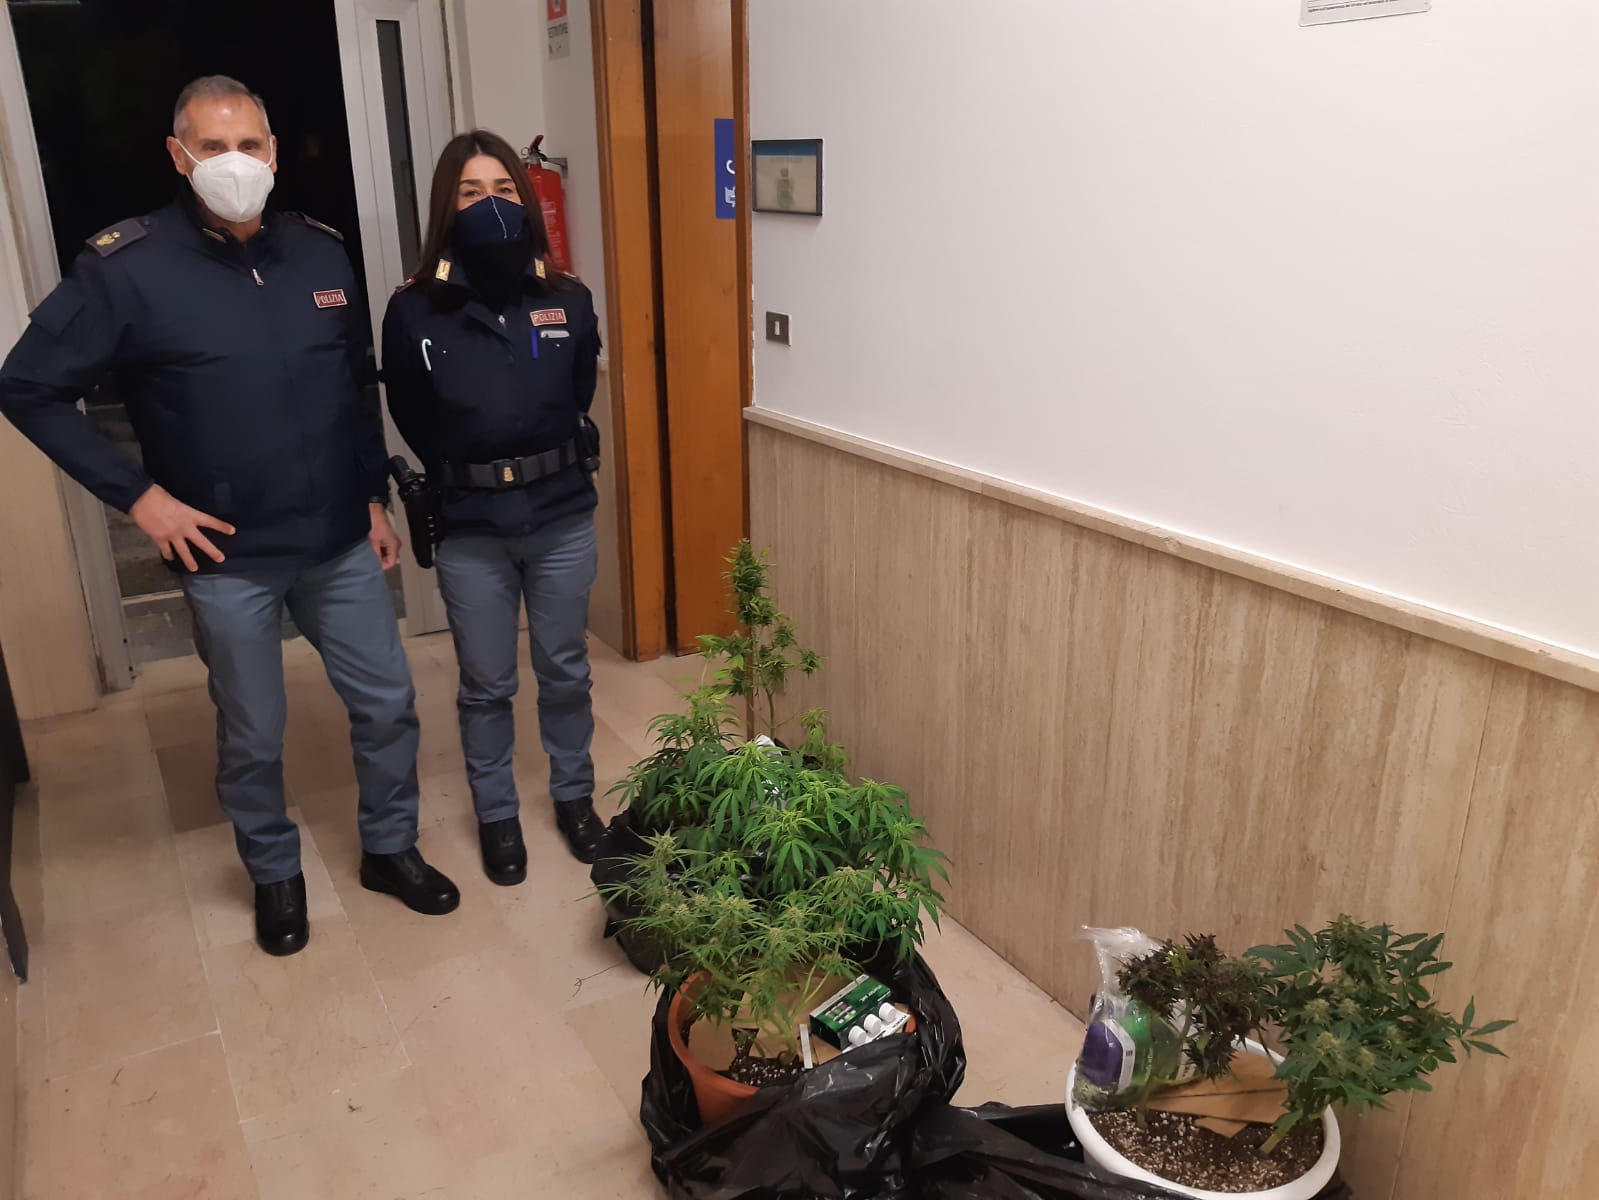  Pescara: arresto per maltrattamenti in famiglia, tentata estorsione, coltivazione e detenzione ai fini di spaccio di droga